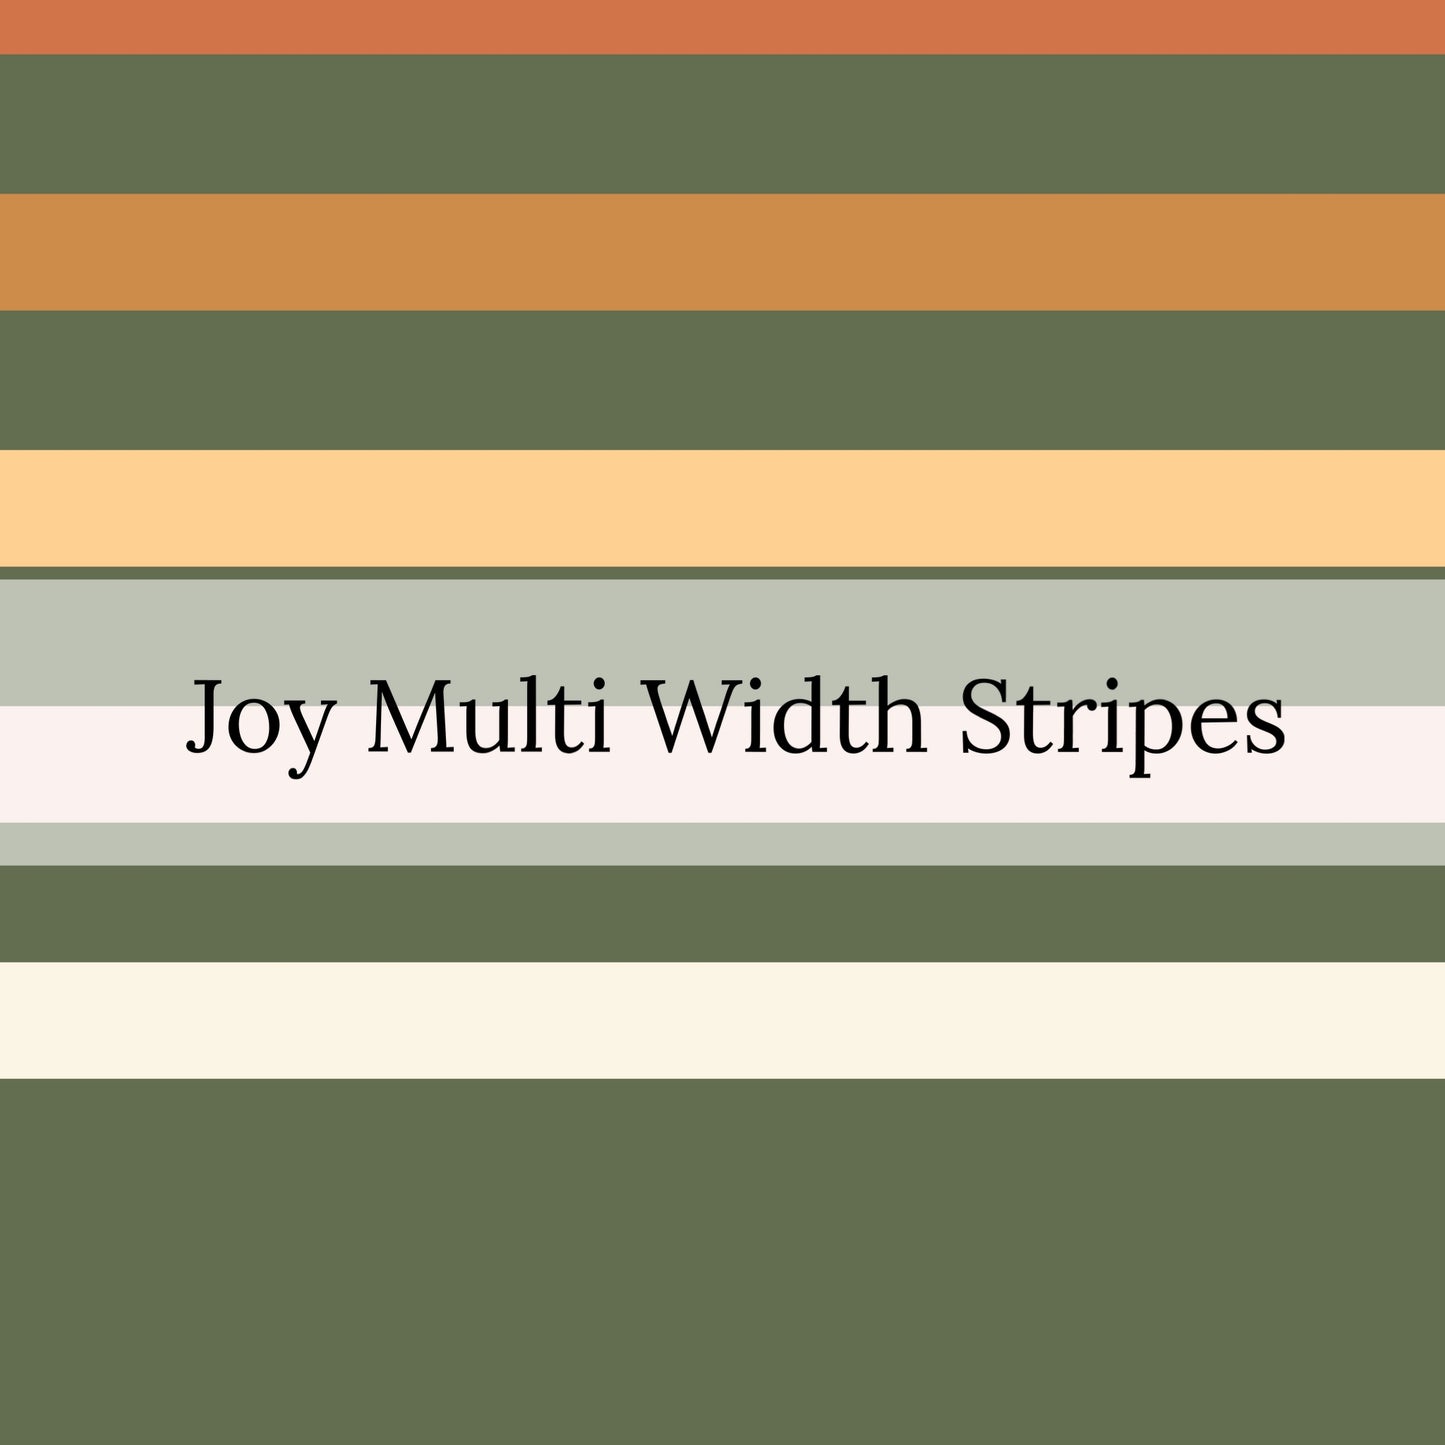 Autumn Joy | Krystal Winn | Faux Leather Sheets